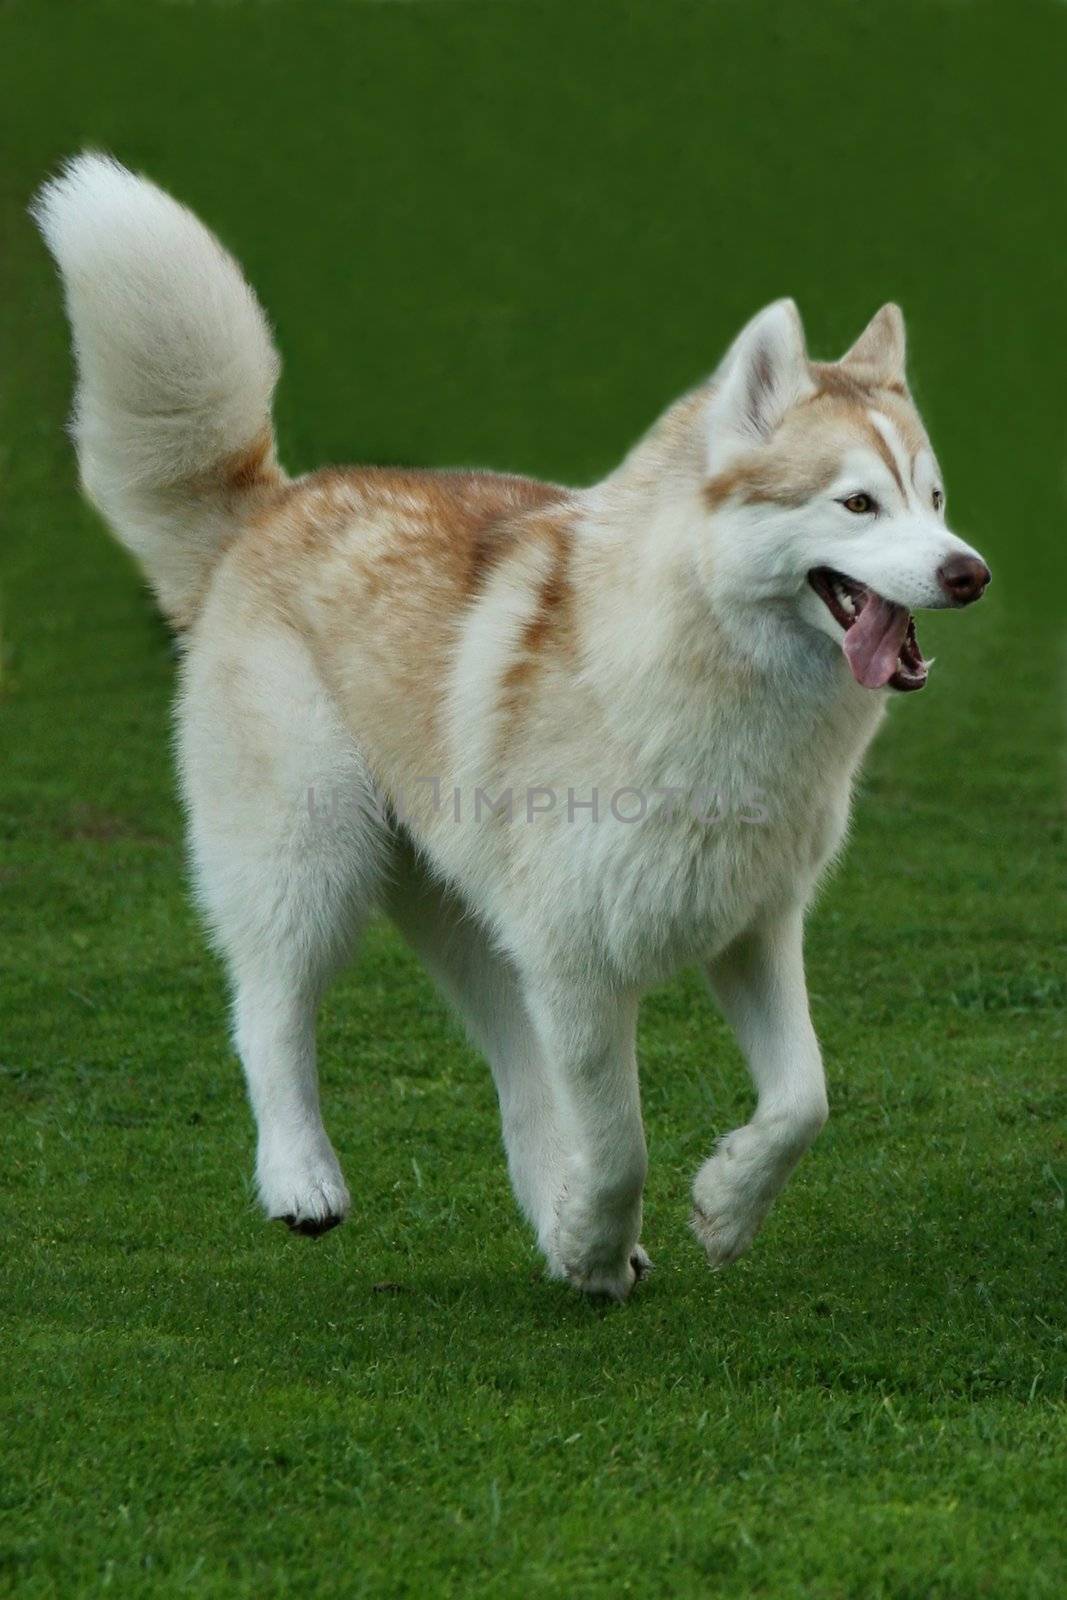 Beautiful Husky dog running across a lawn of green grass